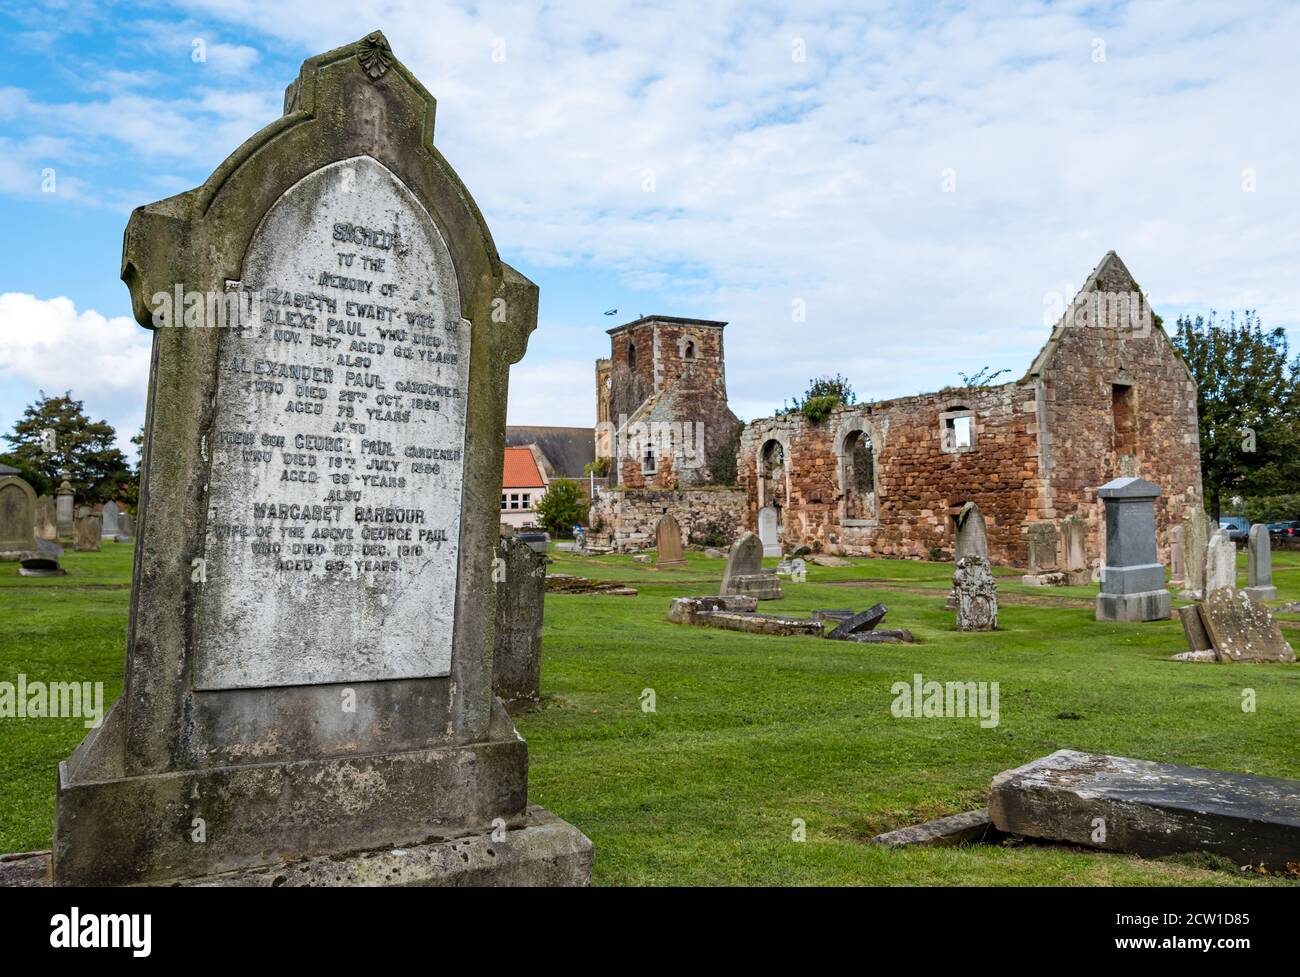 Ruiniert und dachlos 17. Jahrhundert Old St Andrew's Church und alte Gräber auf dem Friedhof, North Berwick, East Lothian, Schottland, Großbritannien Stockfoto